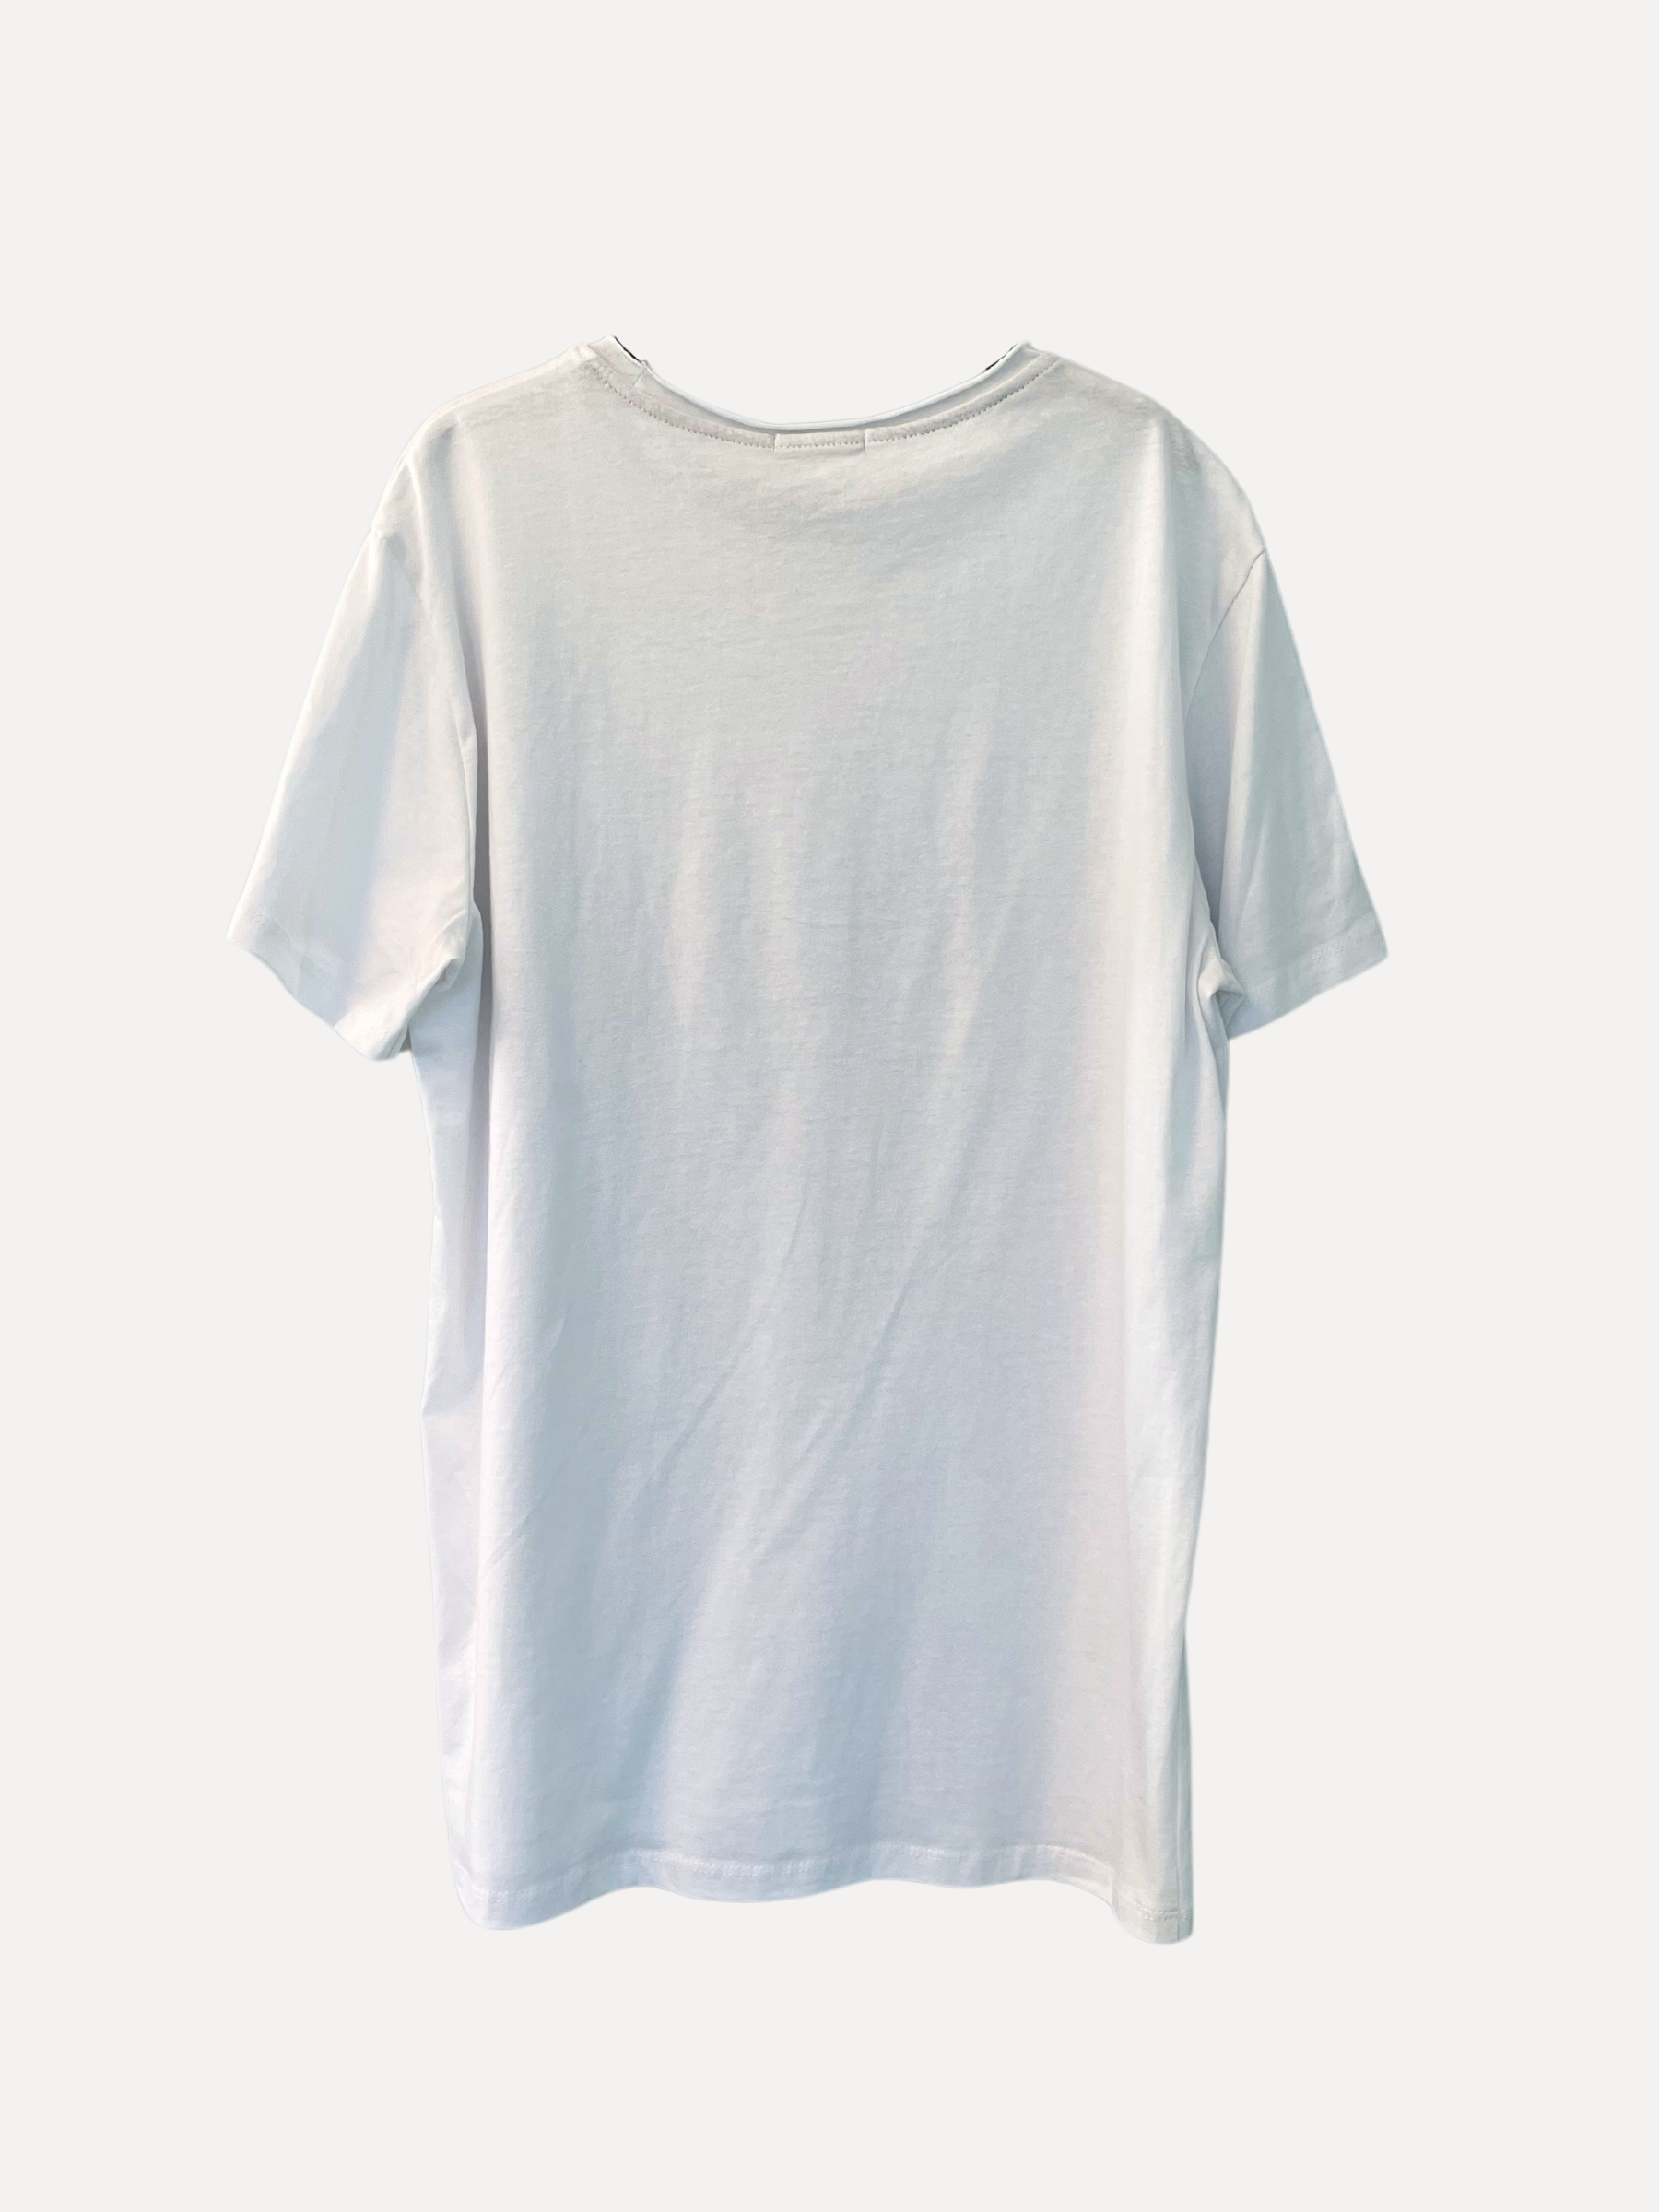 OTTO T-Shirt, White